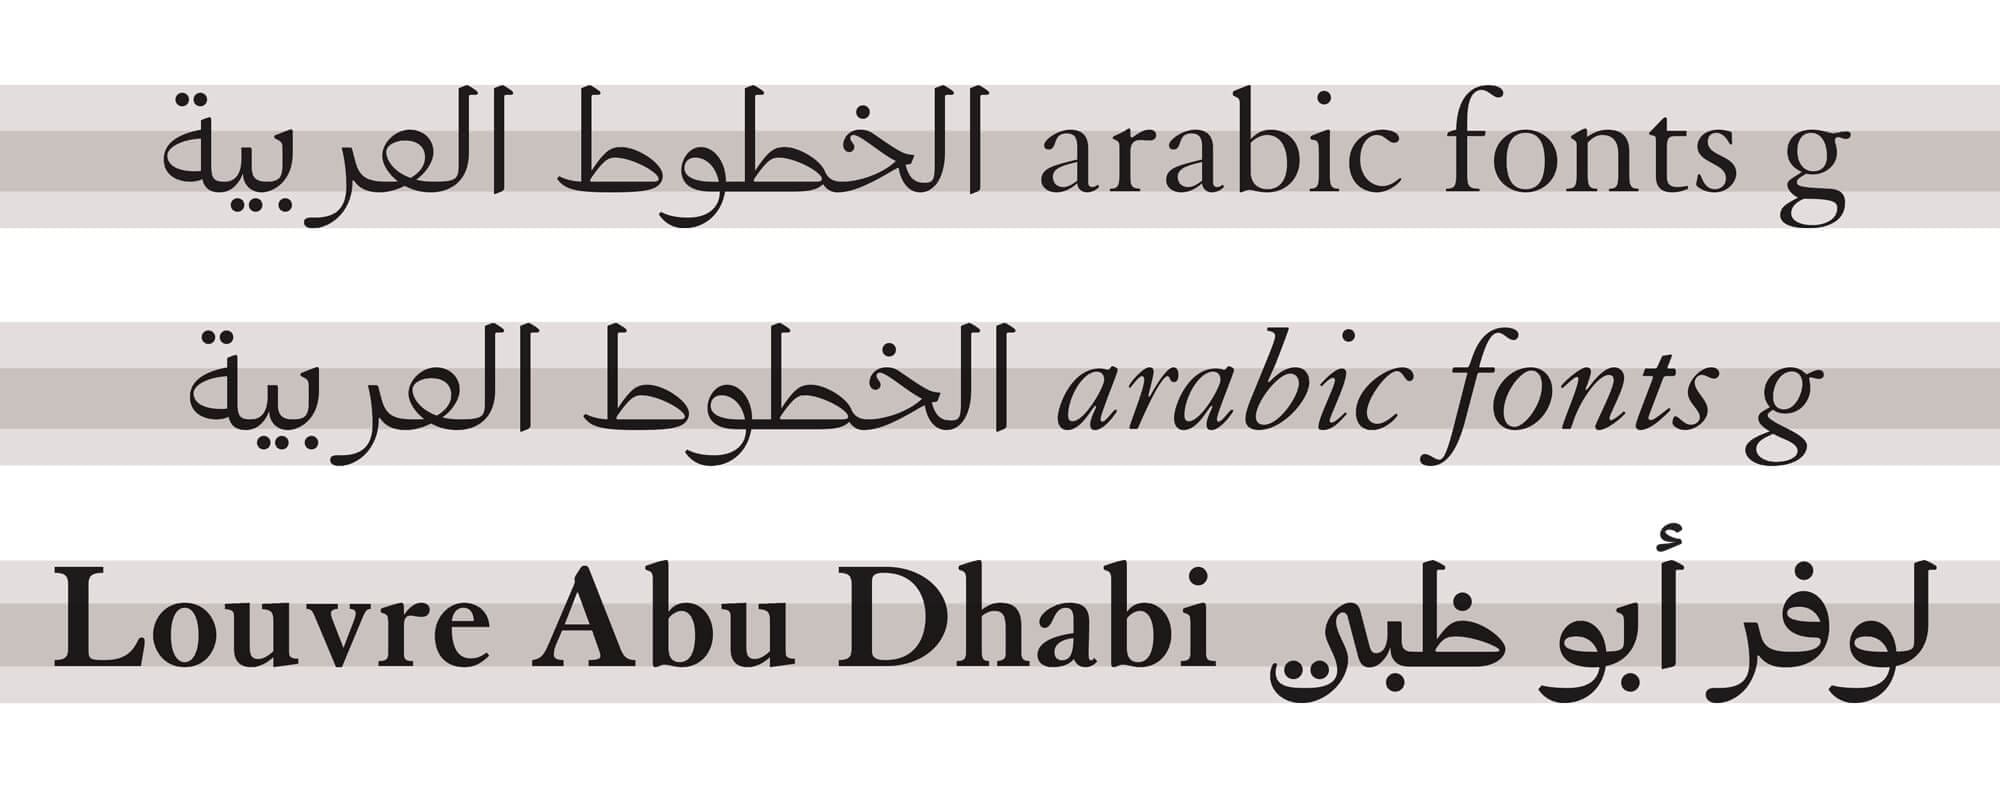 application du louvre arabic, une typographie dessinée par Laurent Bourcelier pour le Louvre Abu Dhabi dans une identité réalisé par Ichetkar.